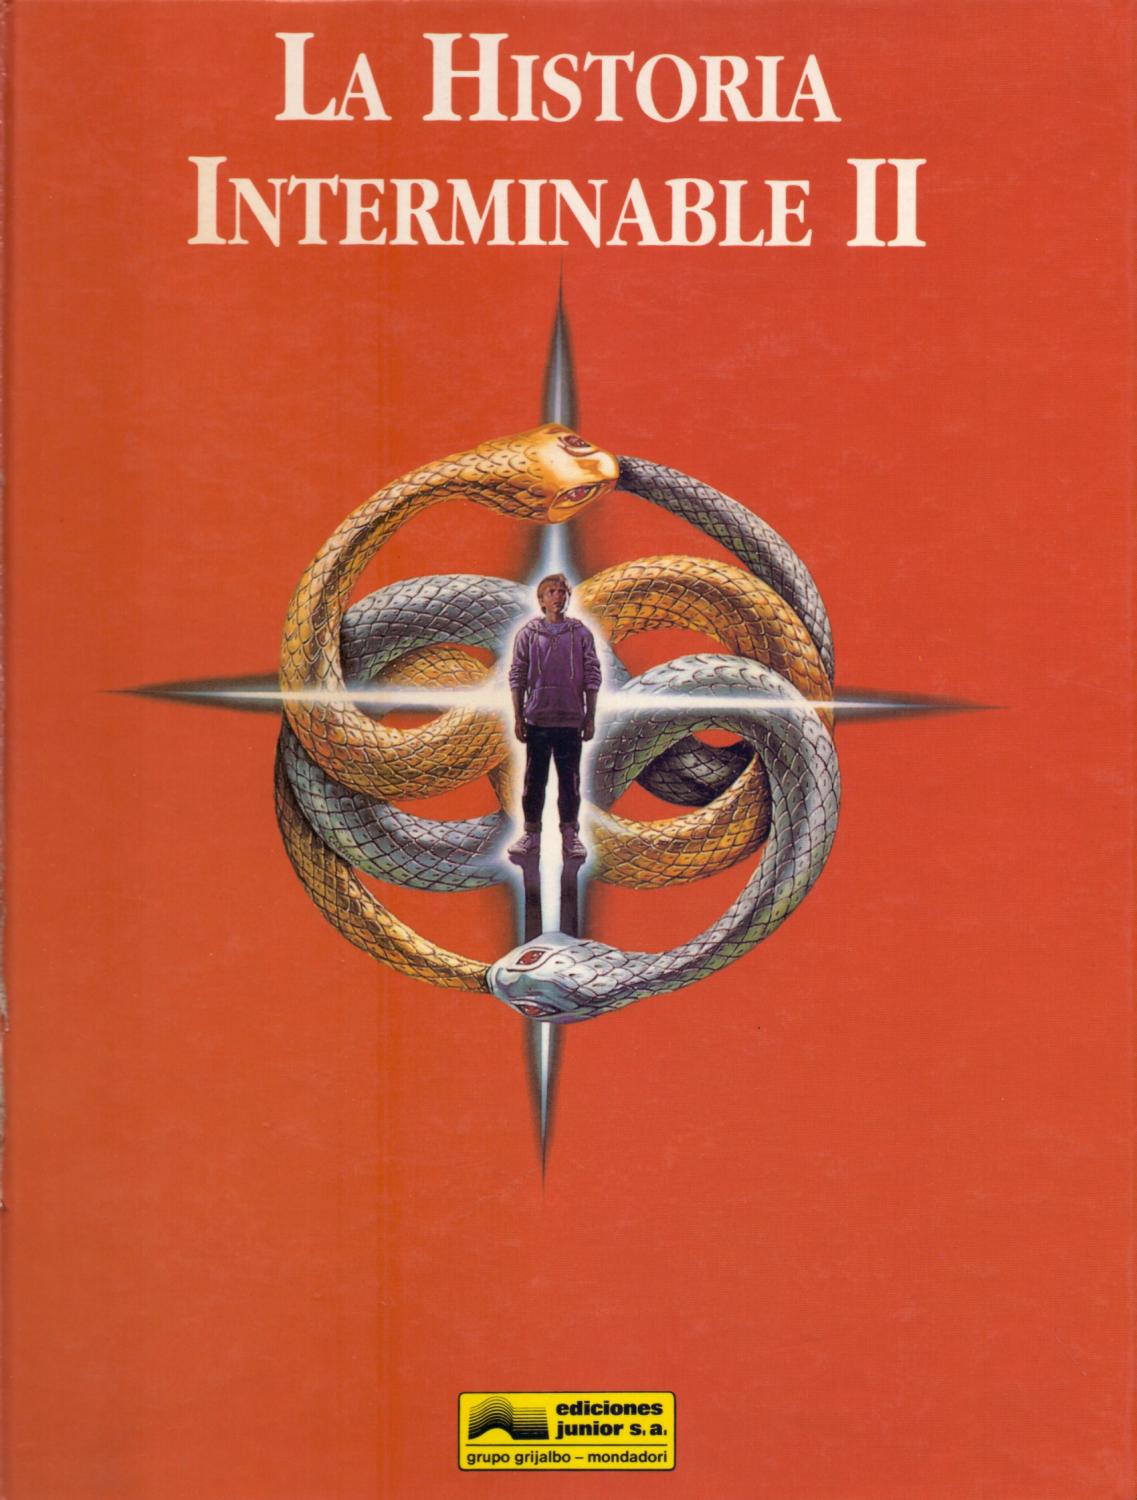 LA HISTORIA INTERMINABLE II - EL LIBRO DE LA PELICULA by Warner